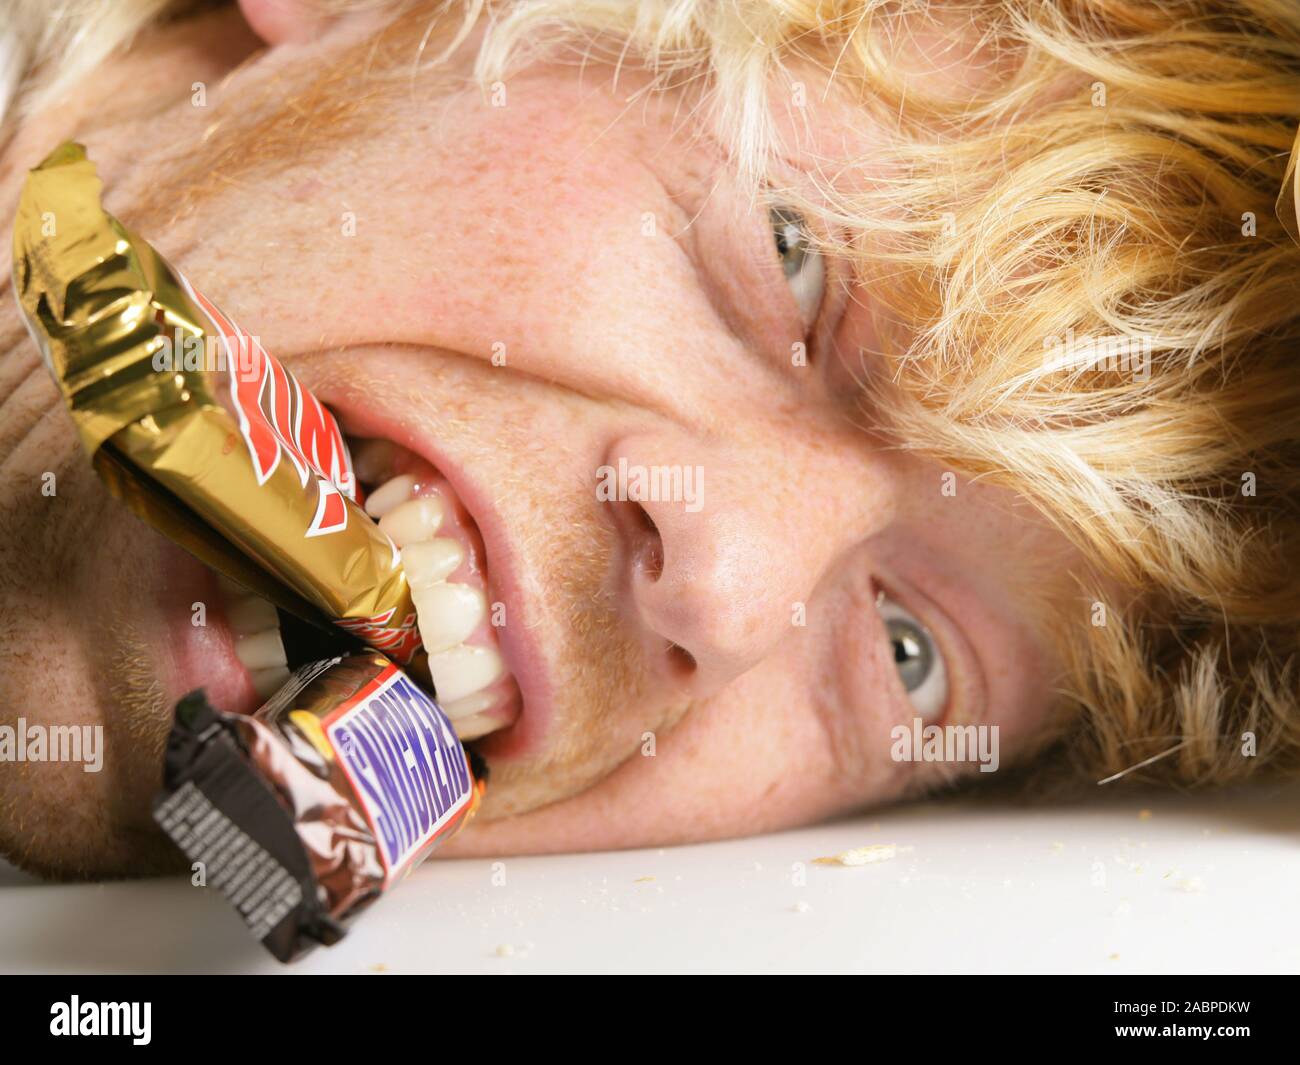 Blonder junger Mann beisst mit Genuss in Schokoladenartikel - Vernarrt in Suessigkeiten - Symbolfoto - Suchtgefahr Junger Mann schneidet Grimassen Stock Photo